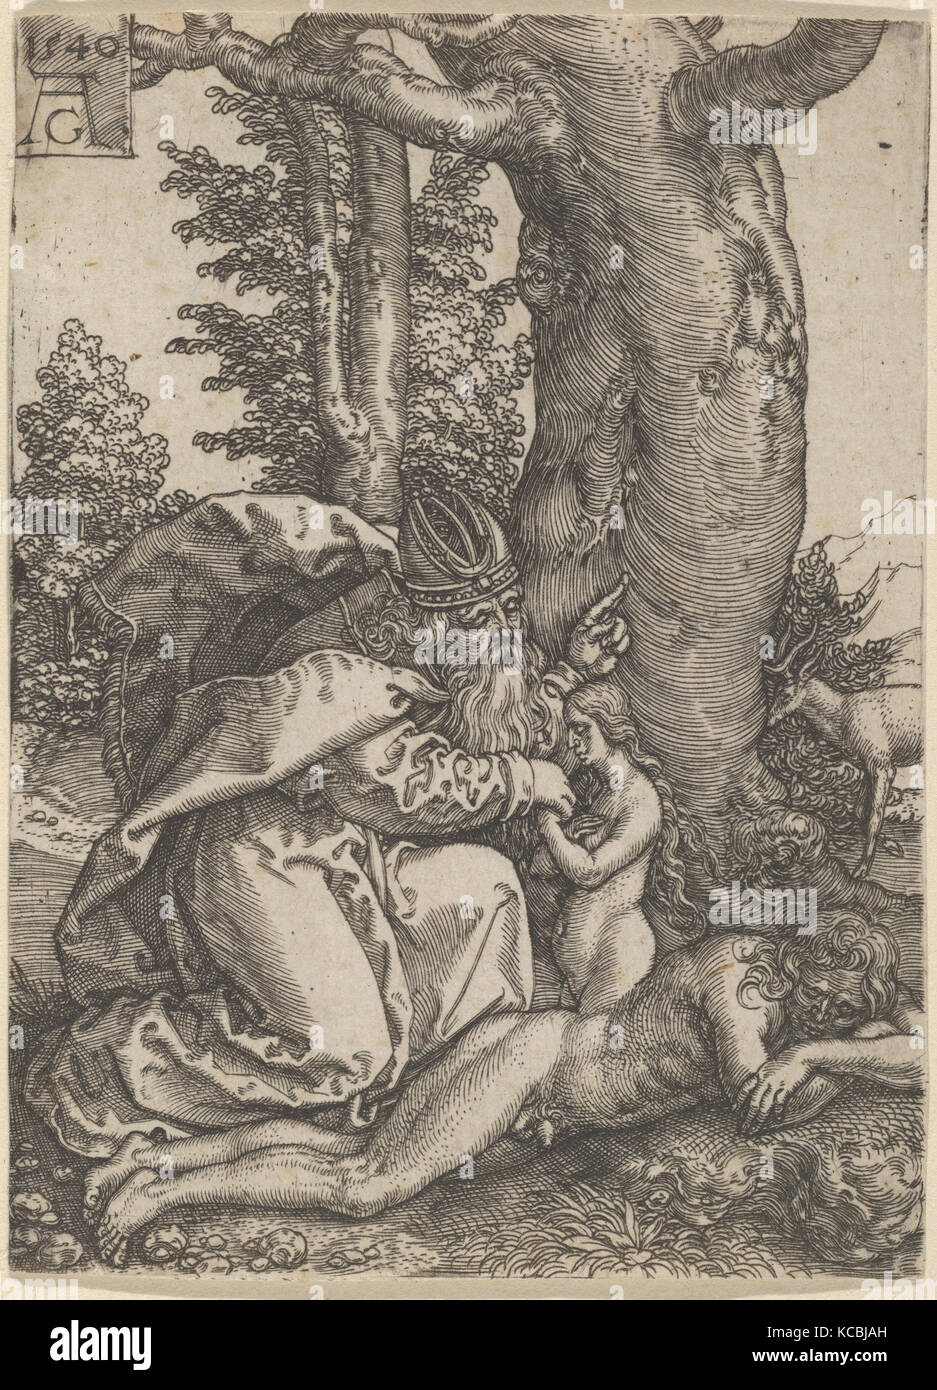 La création d'Ève, de l'histoire d'Adam et Eve, Heinrich Aldegrever, 1540 Banque D'Images